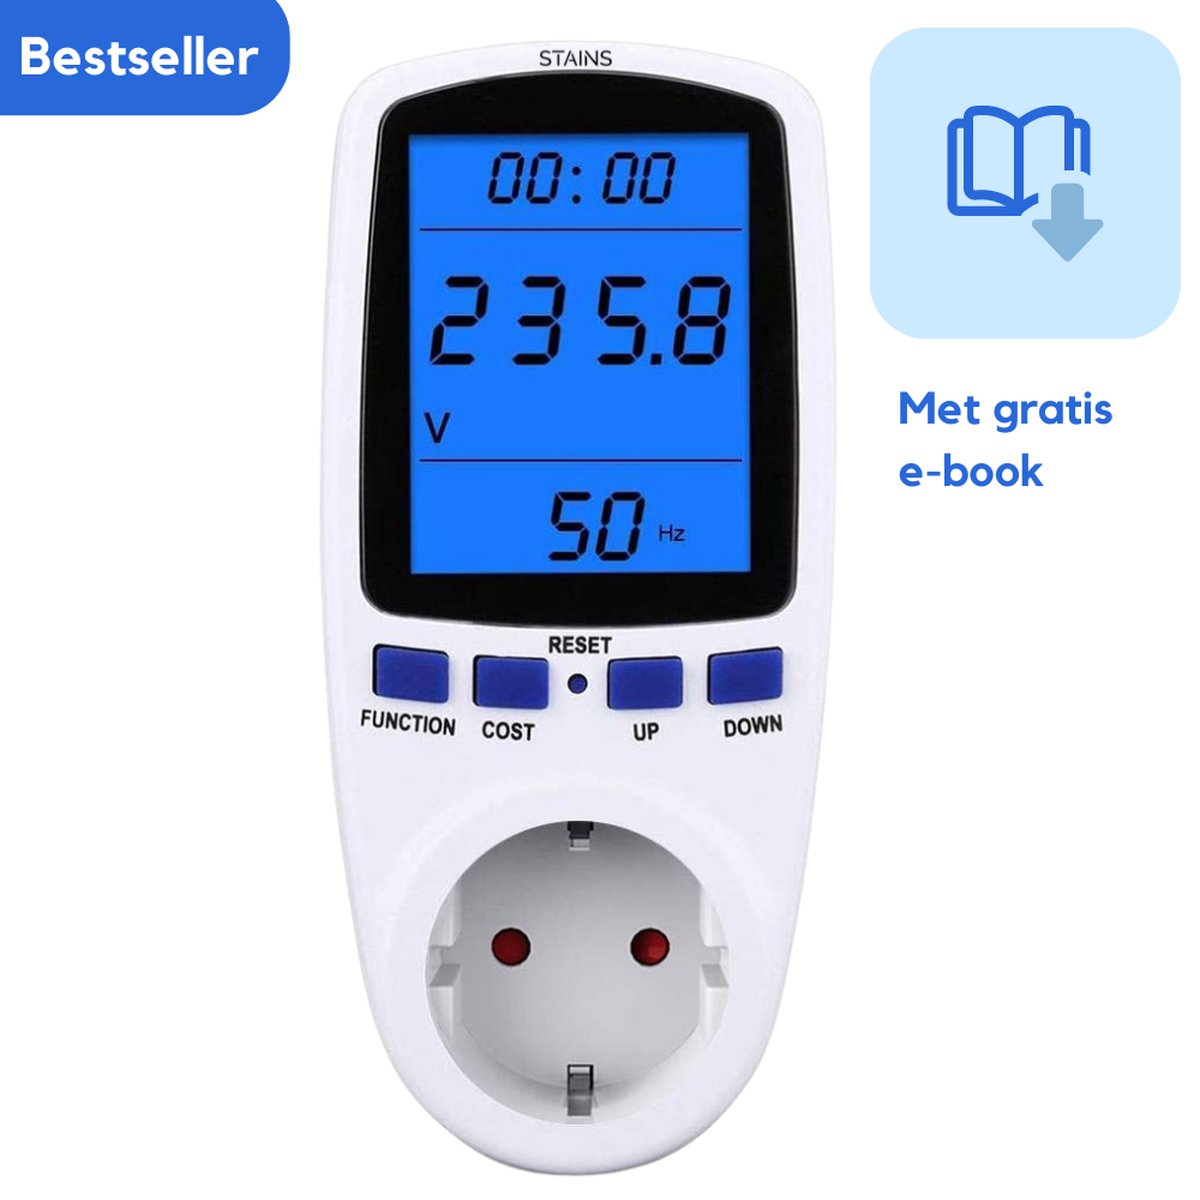 STAINS- Energiemeter - Energieverbruiksmeter - Verbruiksmeter - Energiekostenmeter - Met Nederlandse handleiding - Plus gratis E-book Slim Energie Besparen